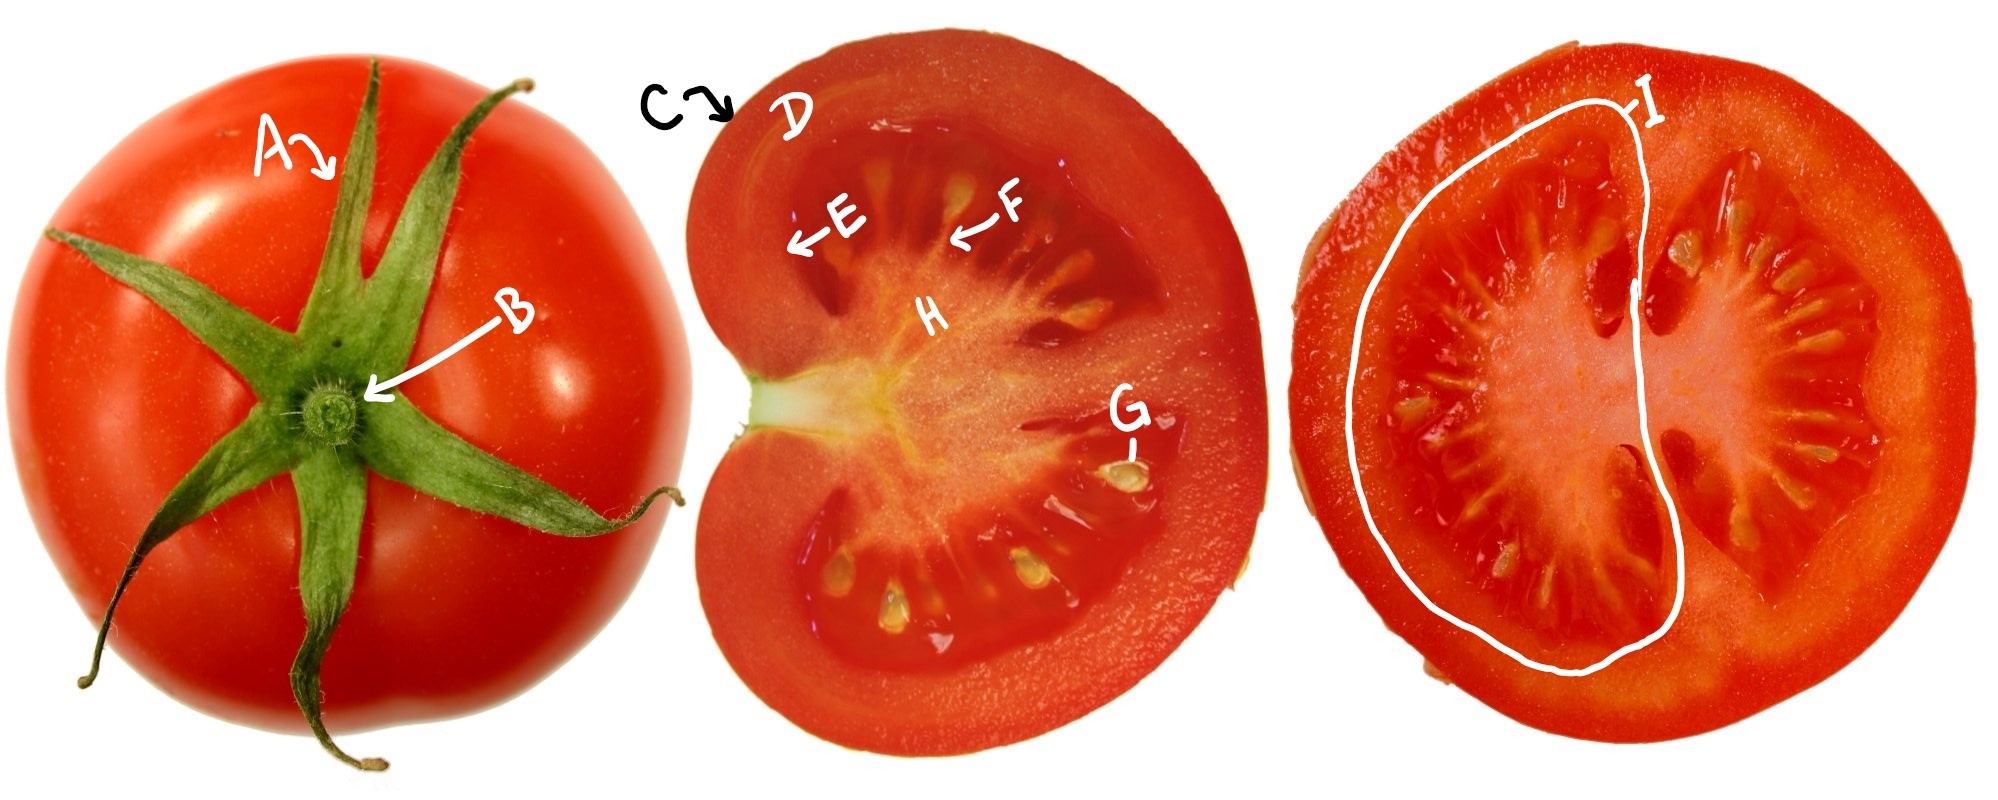 Tres tomates en diferentes vistas y secciones